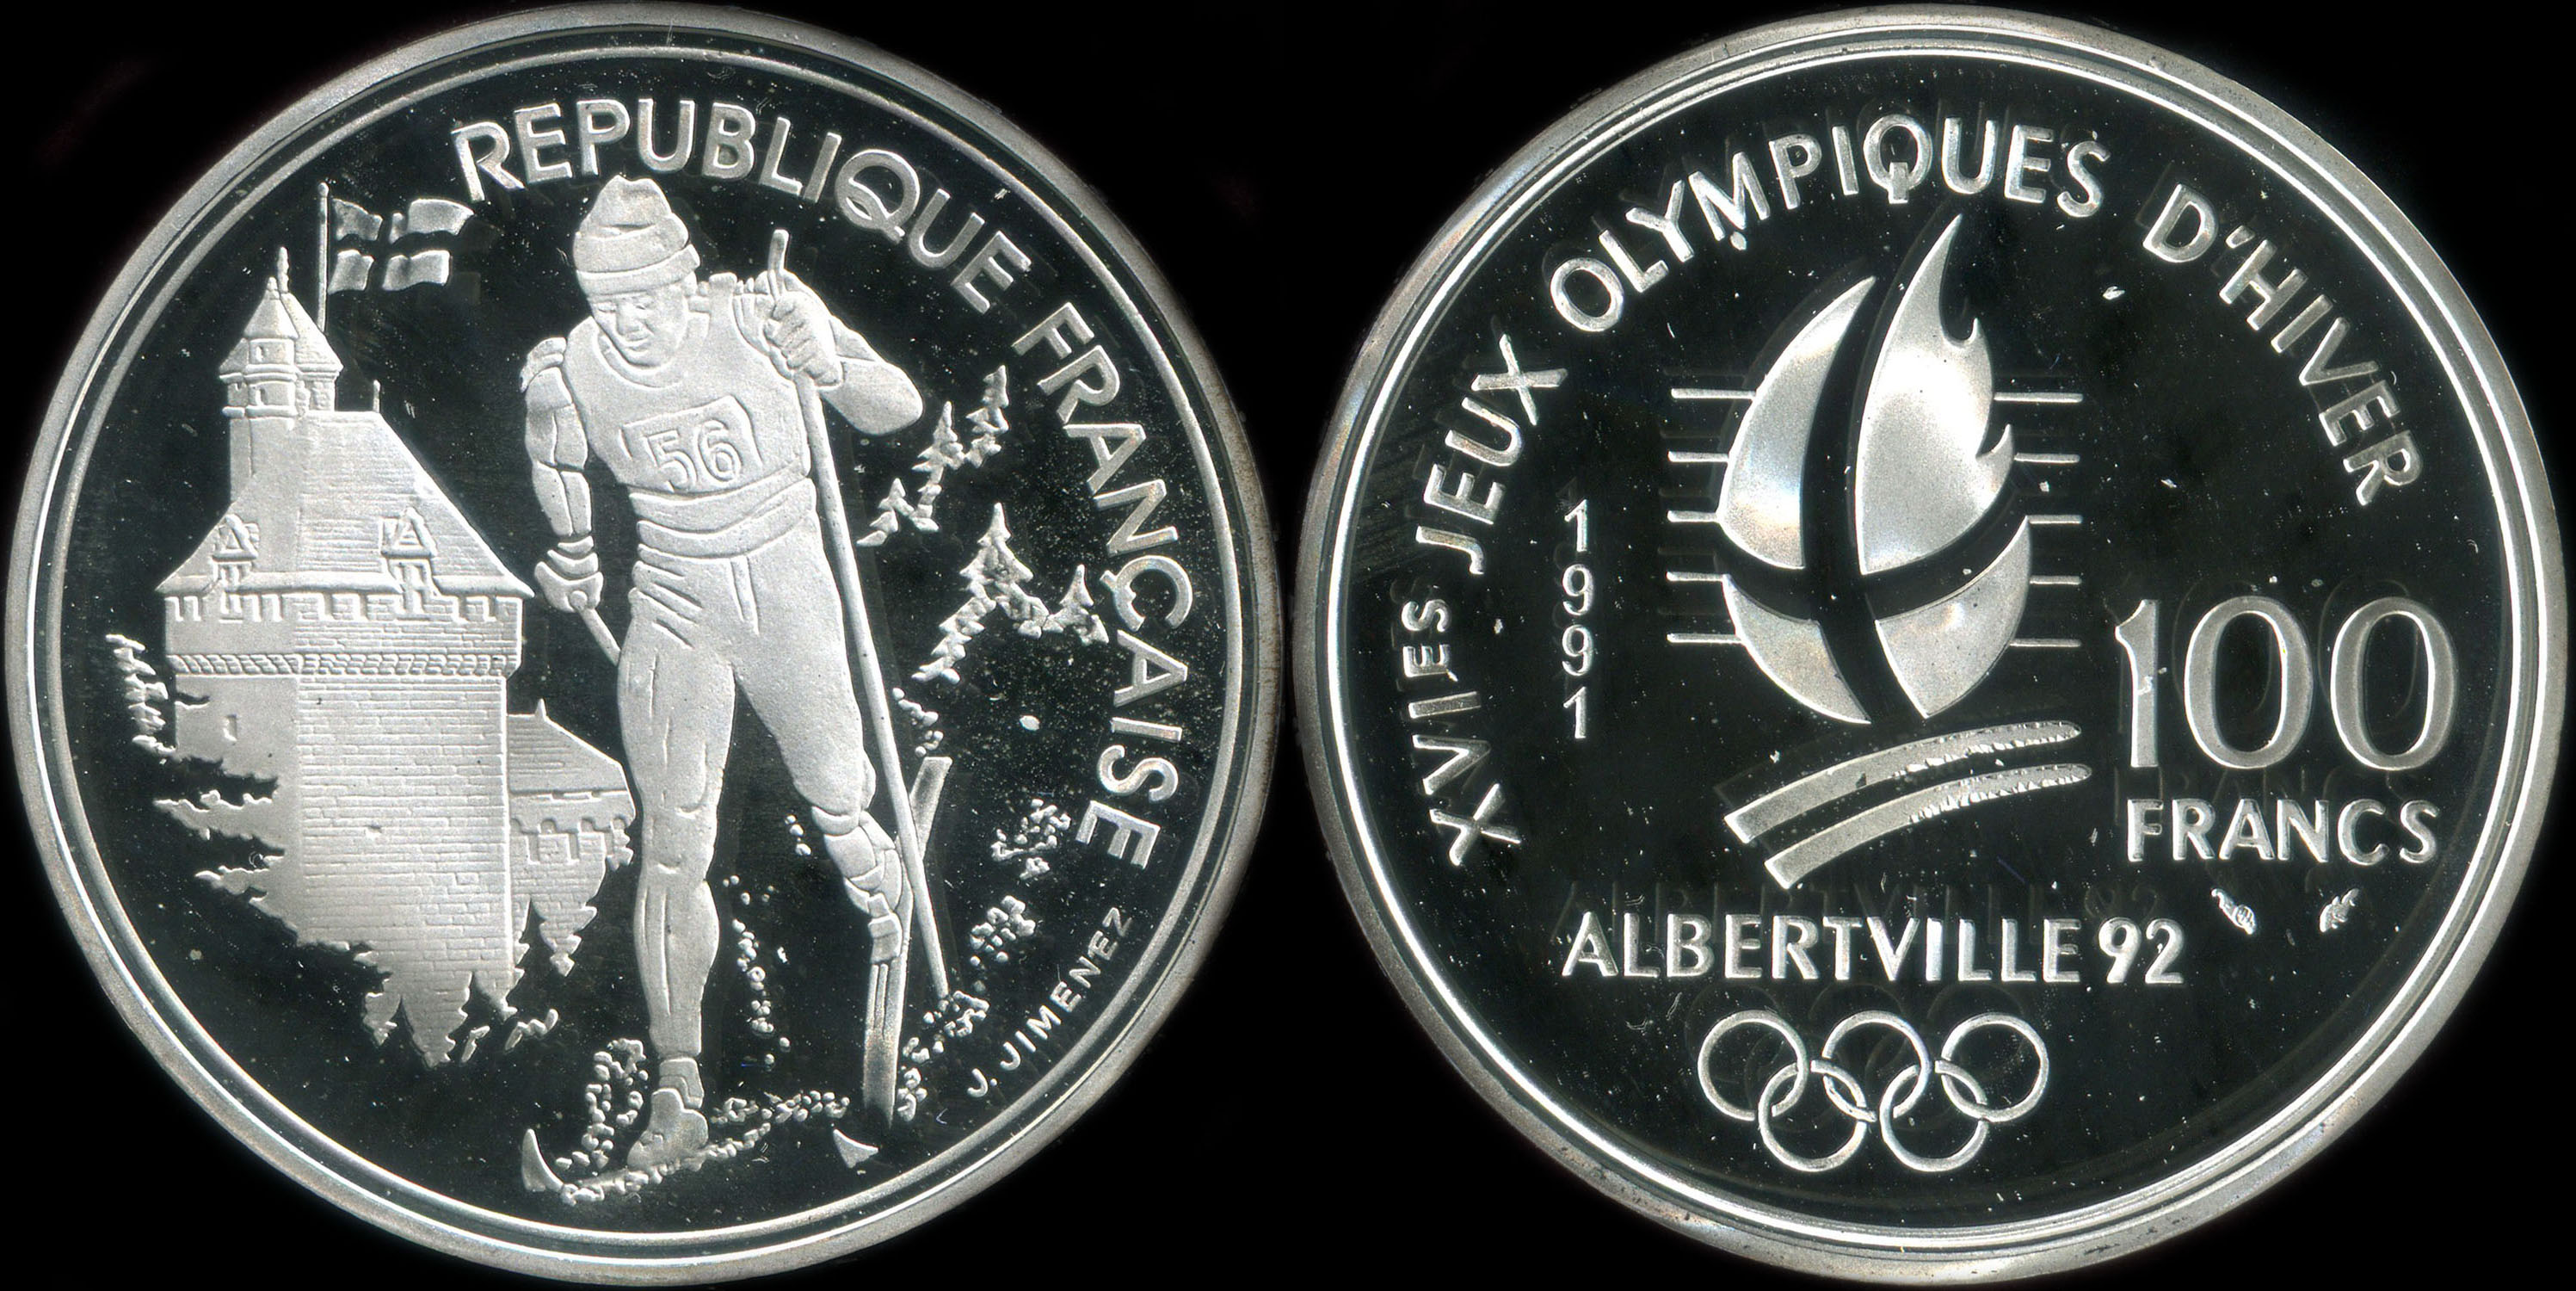 Pice de 100 francs 1991 - XVIes Jeux Olympiques d'Hiver - Albertville 92 - Ski de Fond - Chteau des Ducs de Savoie